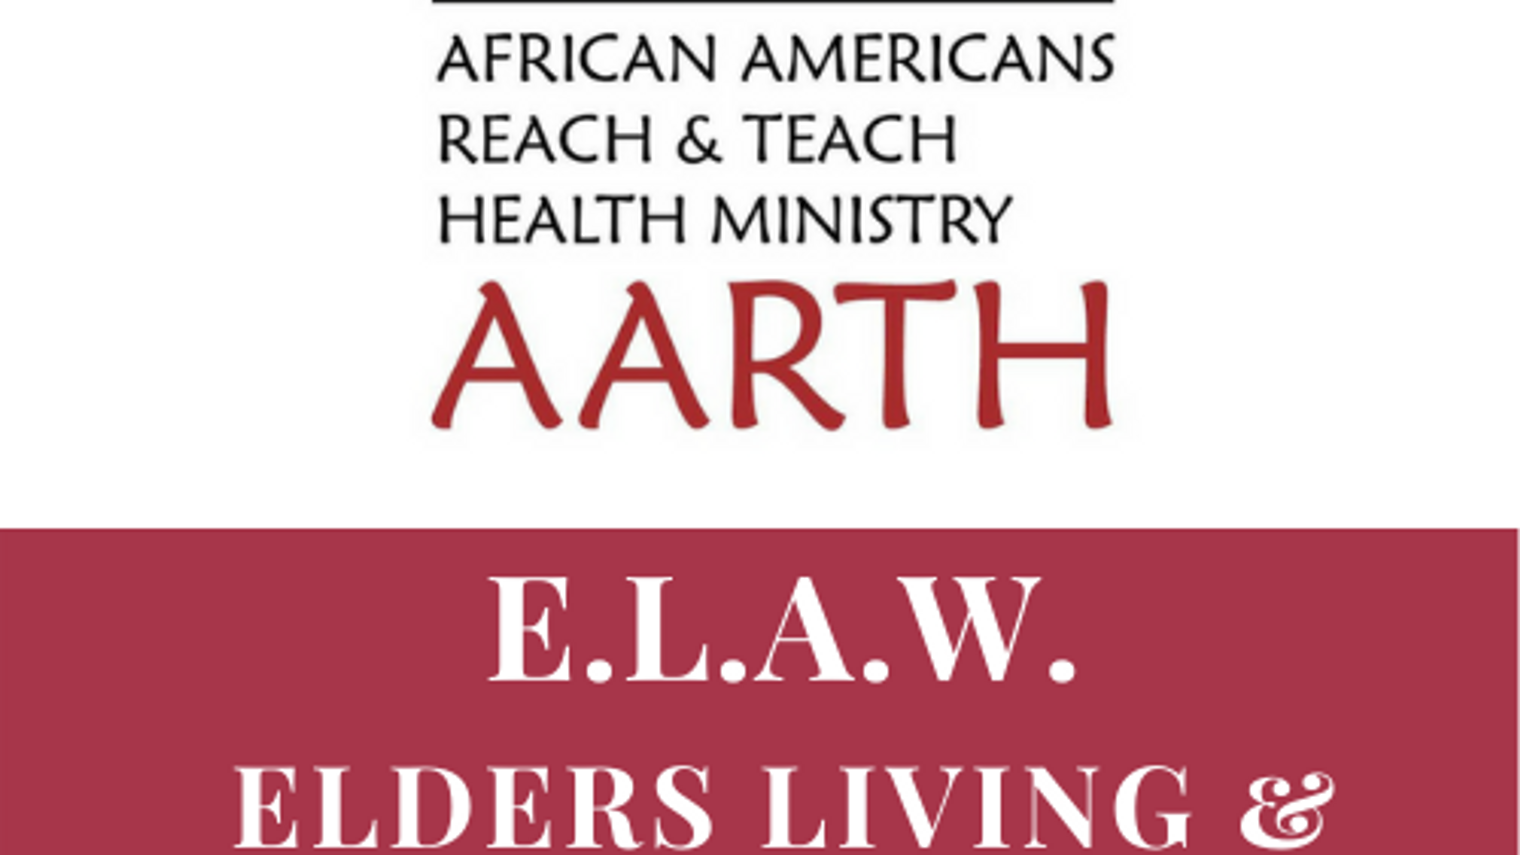 Elders Living & Aging Well (ELAW) Videos